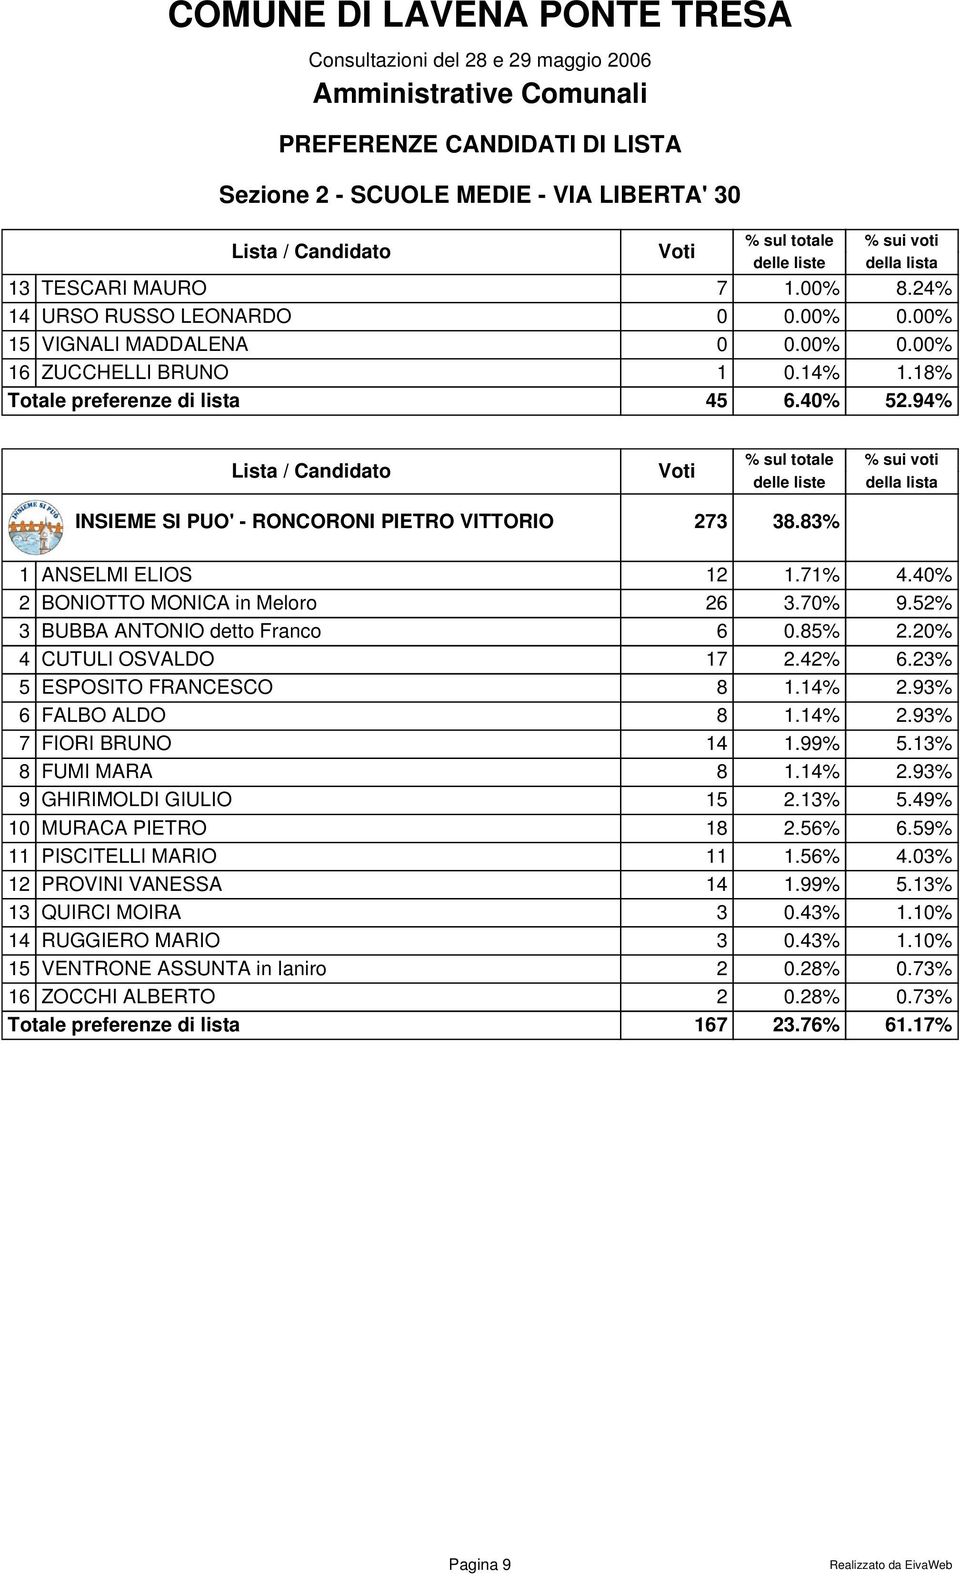 42% 6.23% 5 ESPOSITO FRANCESCO 8 1.14% 2.93% 6 FALBO ALDO 8 1.14% 2.93% 7 FIORI BRUNO 14 1.99% 5.13% 8 FUMI MARA 8 1.14% 2.93% 9 GHIRIMOLDI GIULIO 15 2.13% 5.49% 10 MURACA PIETRO 18 2.56% 6.